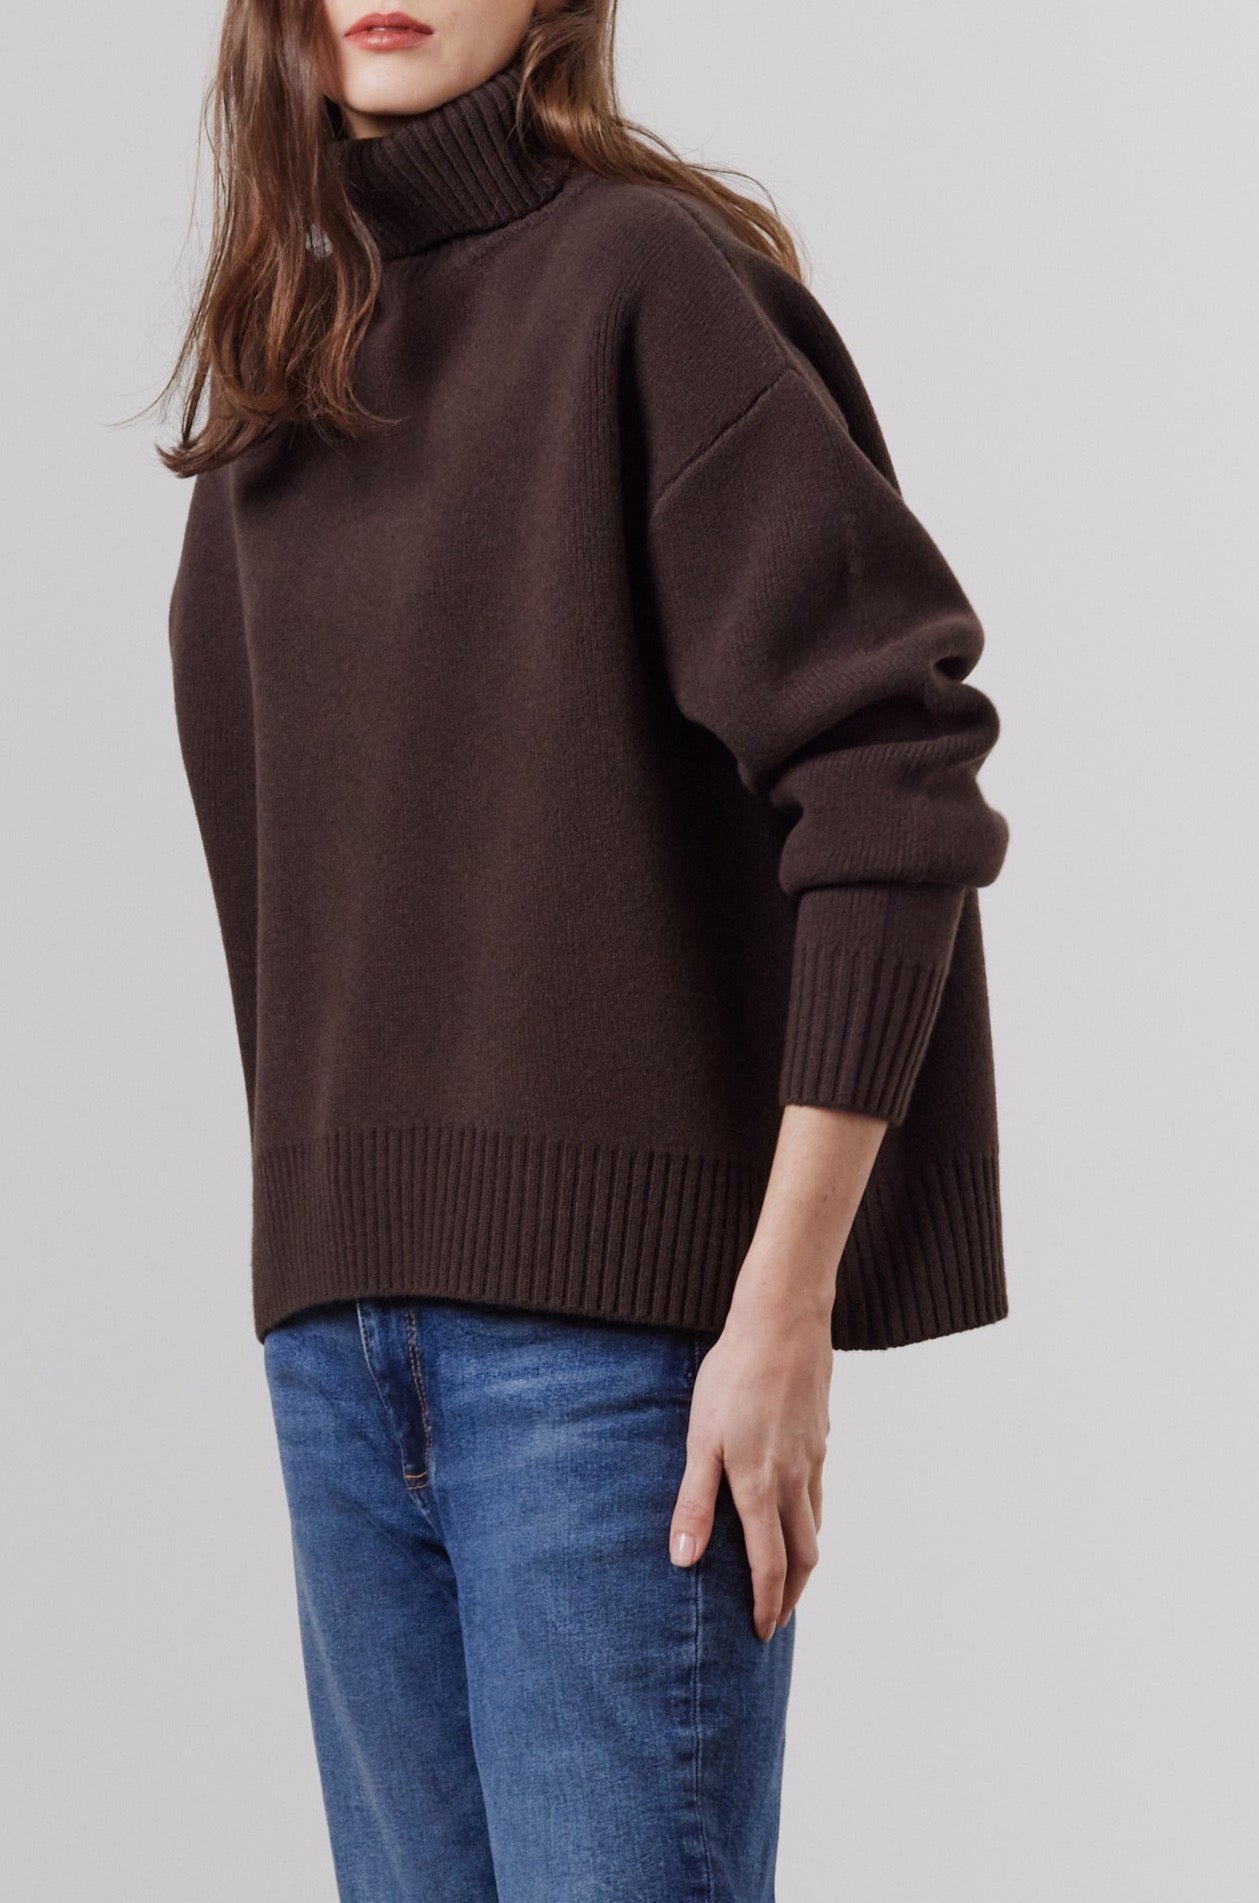 Laing | Nico Oversized Sweater - Chocolate